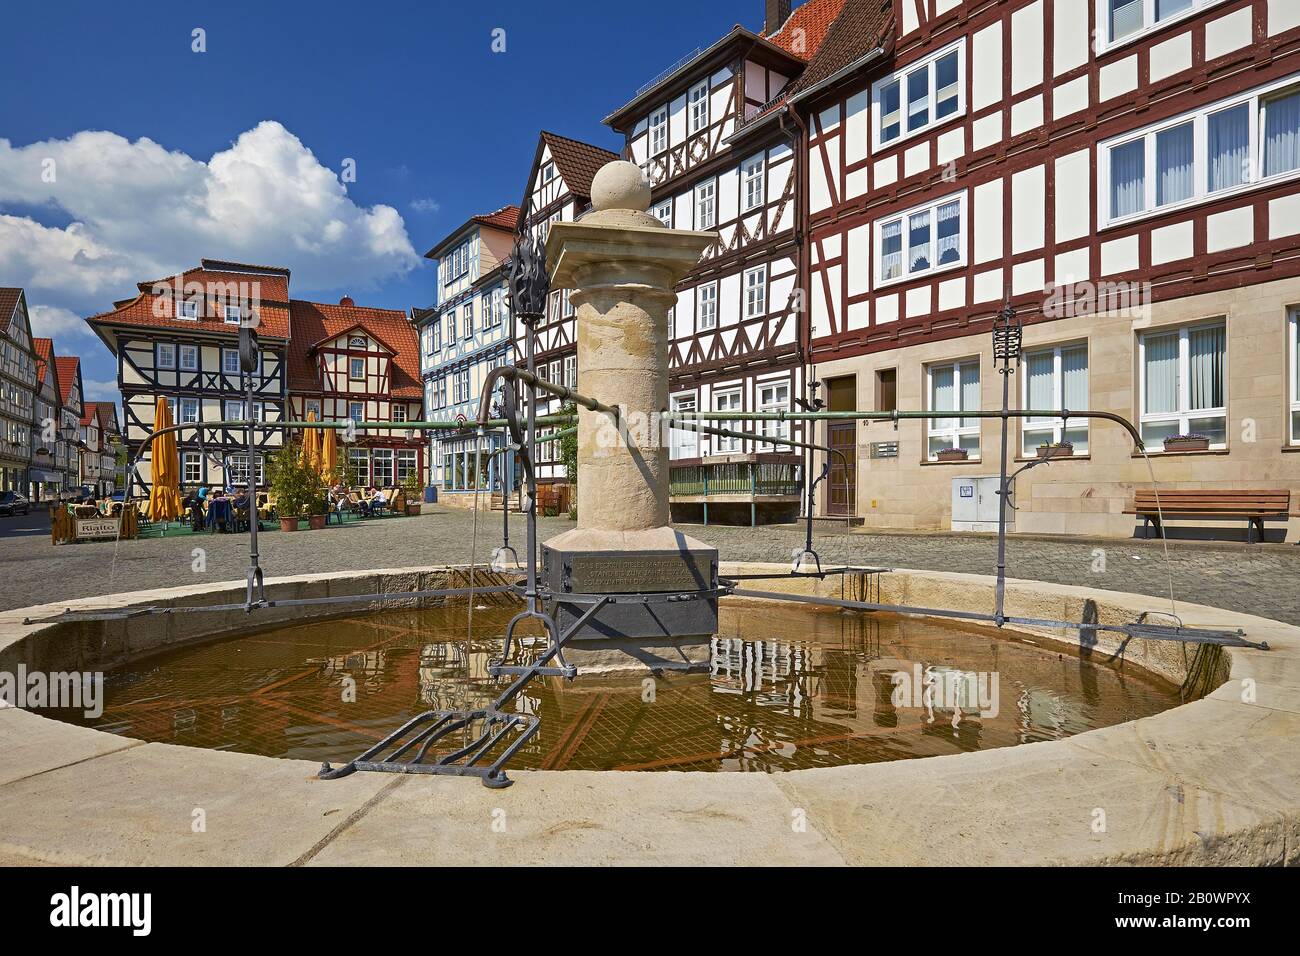 Fontana sul mercato di Allendorf, Bad Sooden-Allendorf, Hesse, Germania, Europa Foto Stock